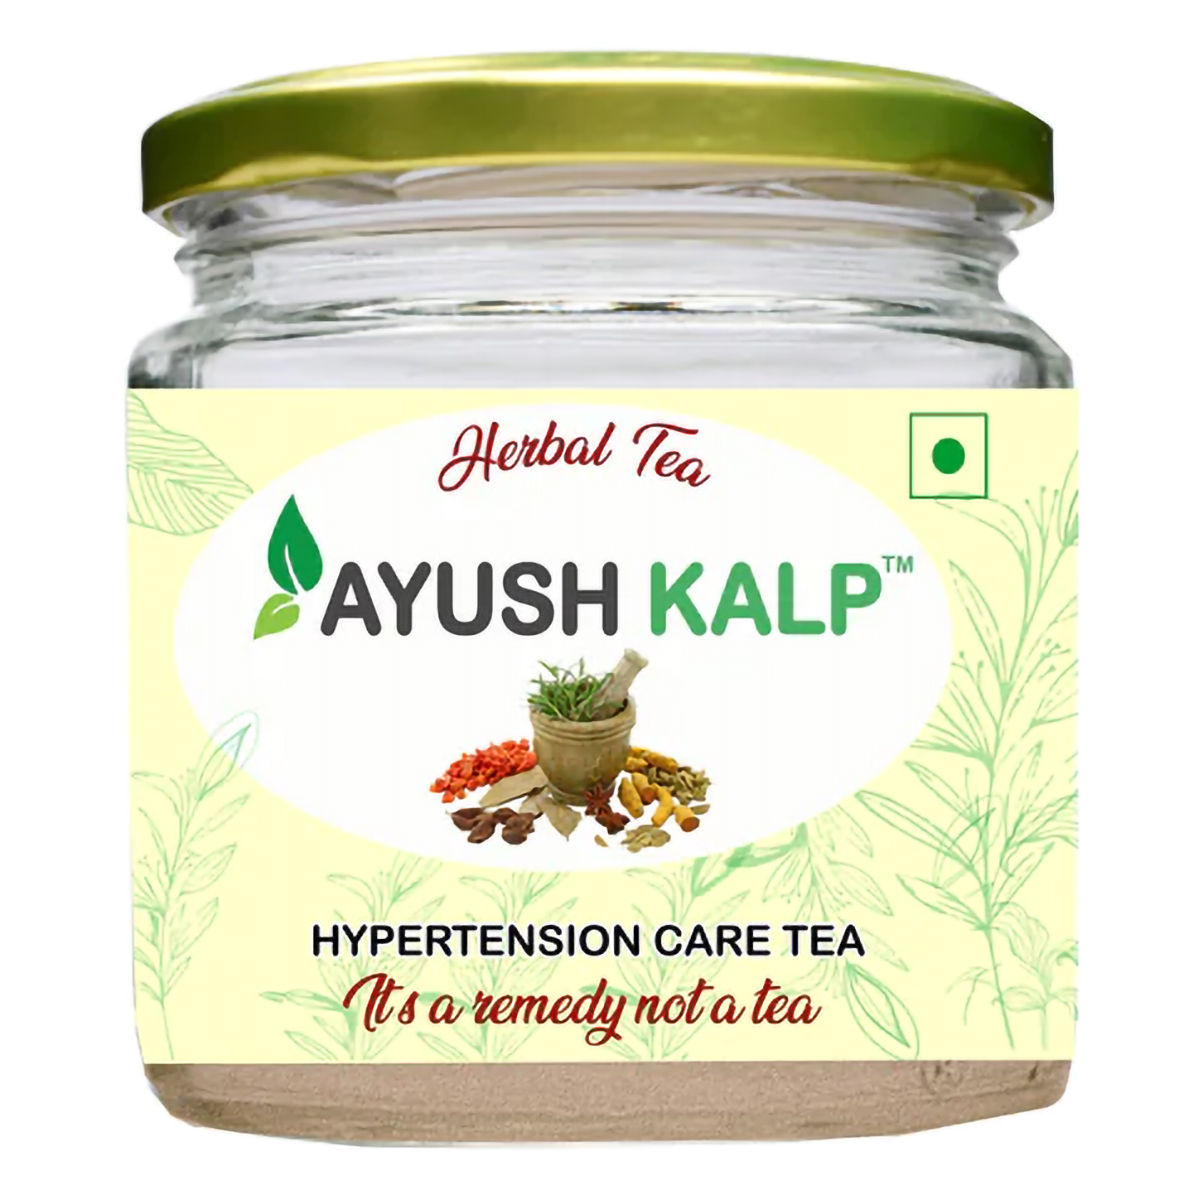 Buy Ayush Kalp Hypertension Care Herbal Tea, 60 gm Online